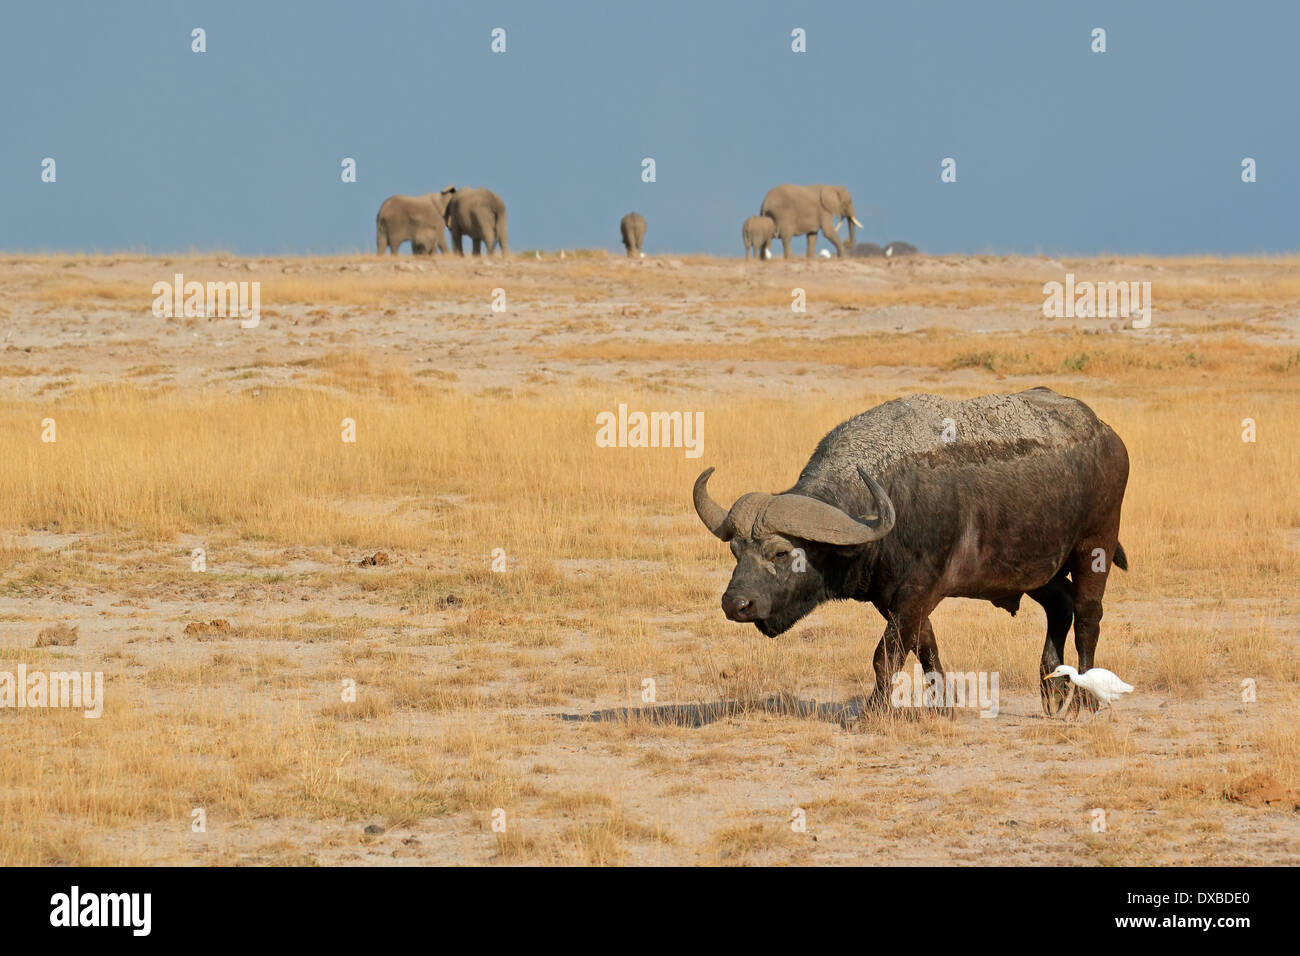 African buffalo (Syncerus caffer) with elephants on the horizon, Amboseli National Park, Kenya Stock Photo